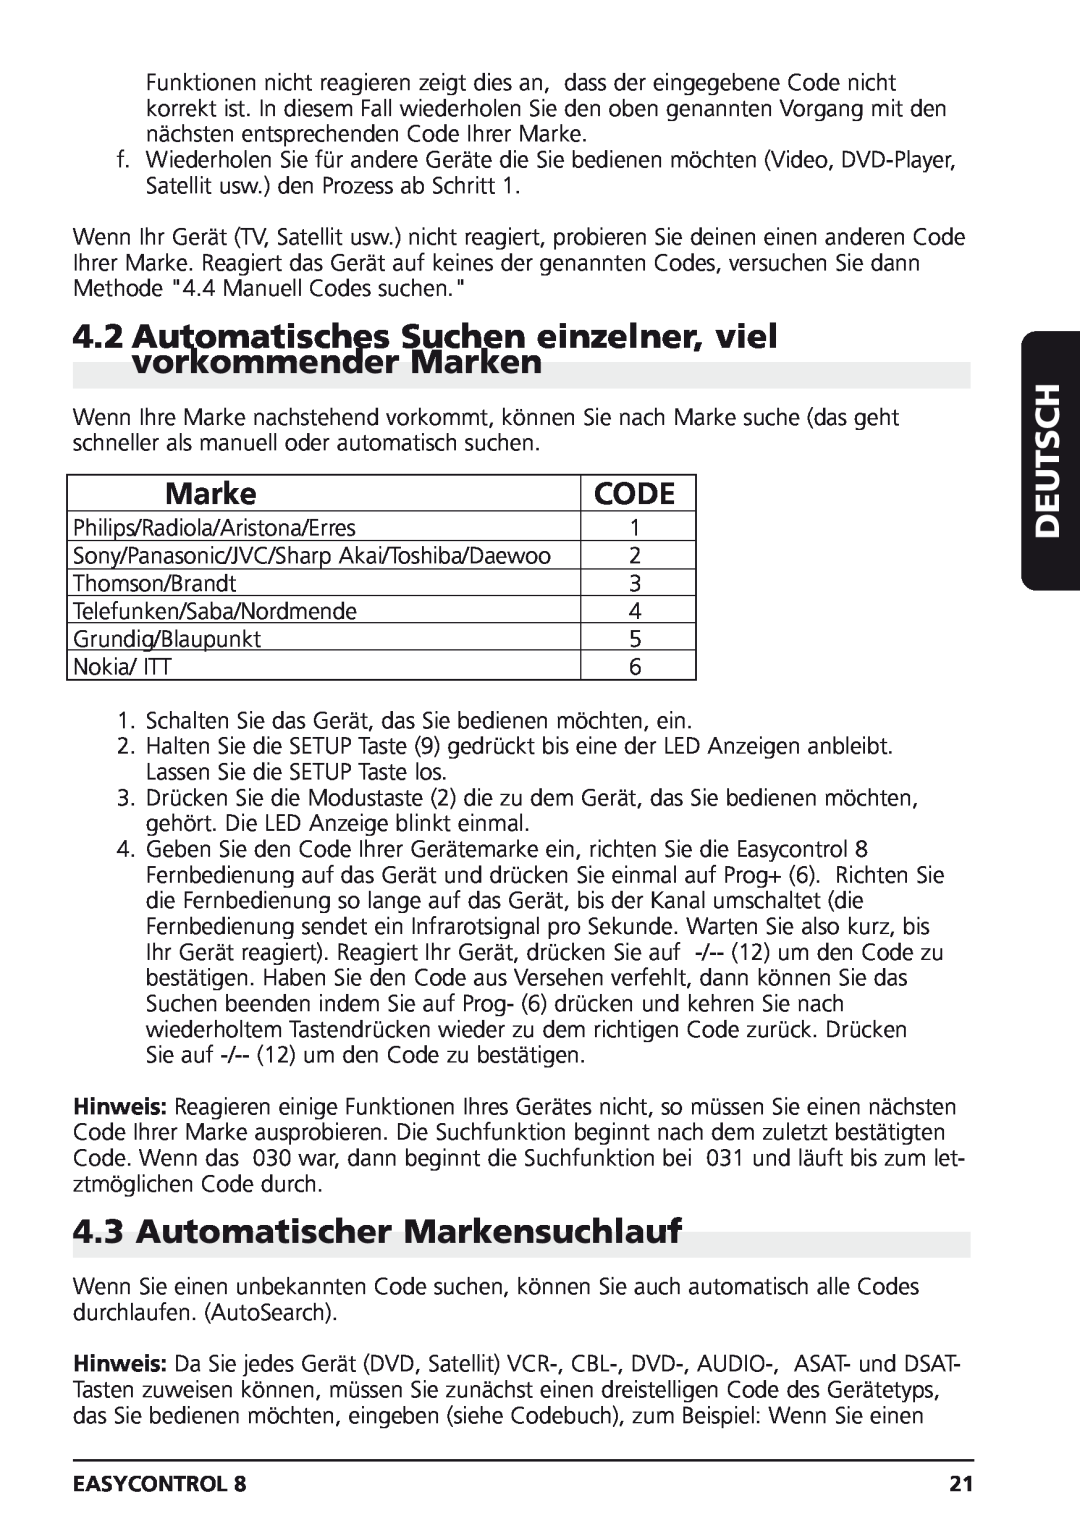 Marmitek Easycontrol 8 Automatisches Suchen einzelner, viel vorkommender Marken, Automatischer Markensuchlauf, Deutsch 